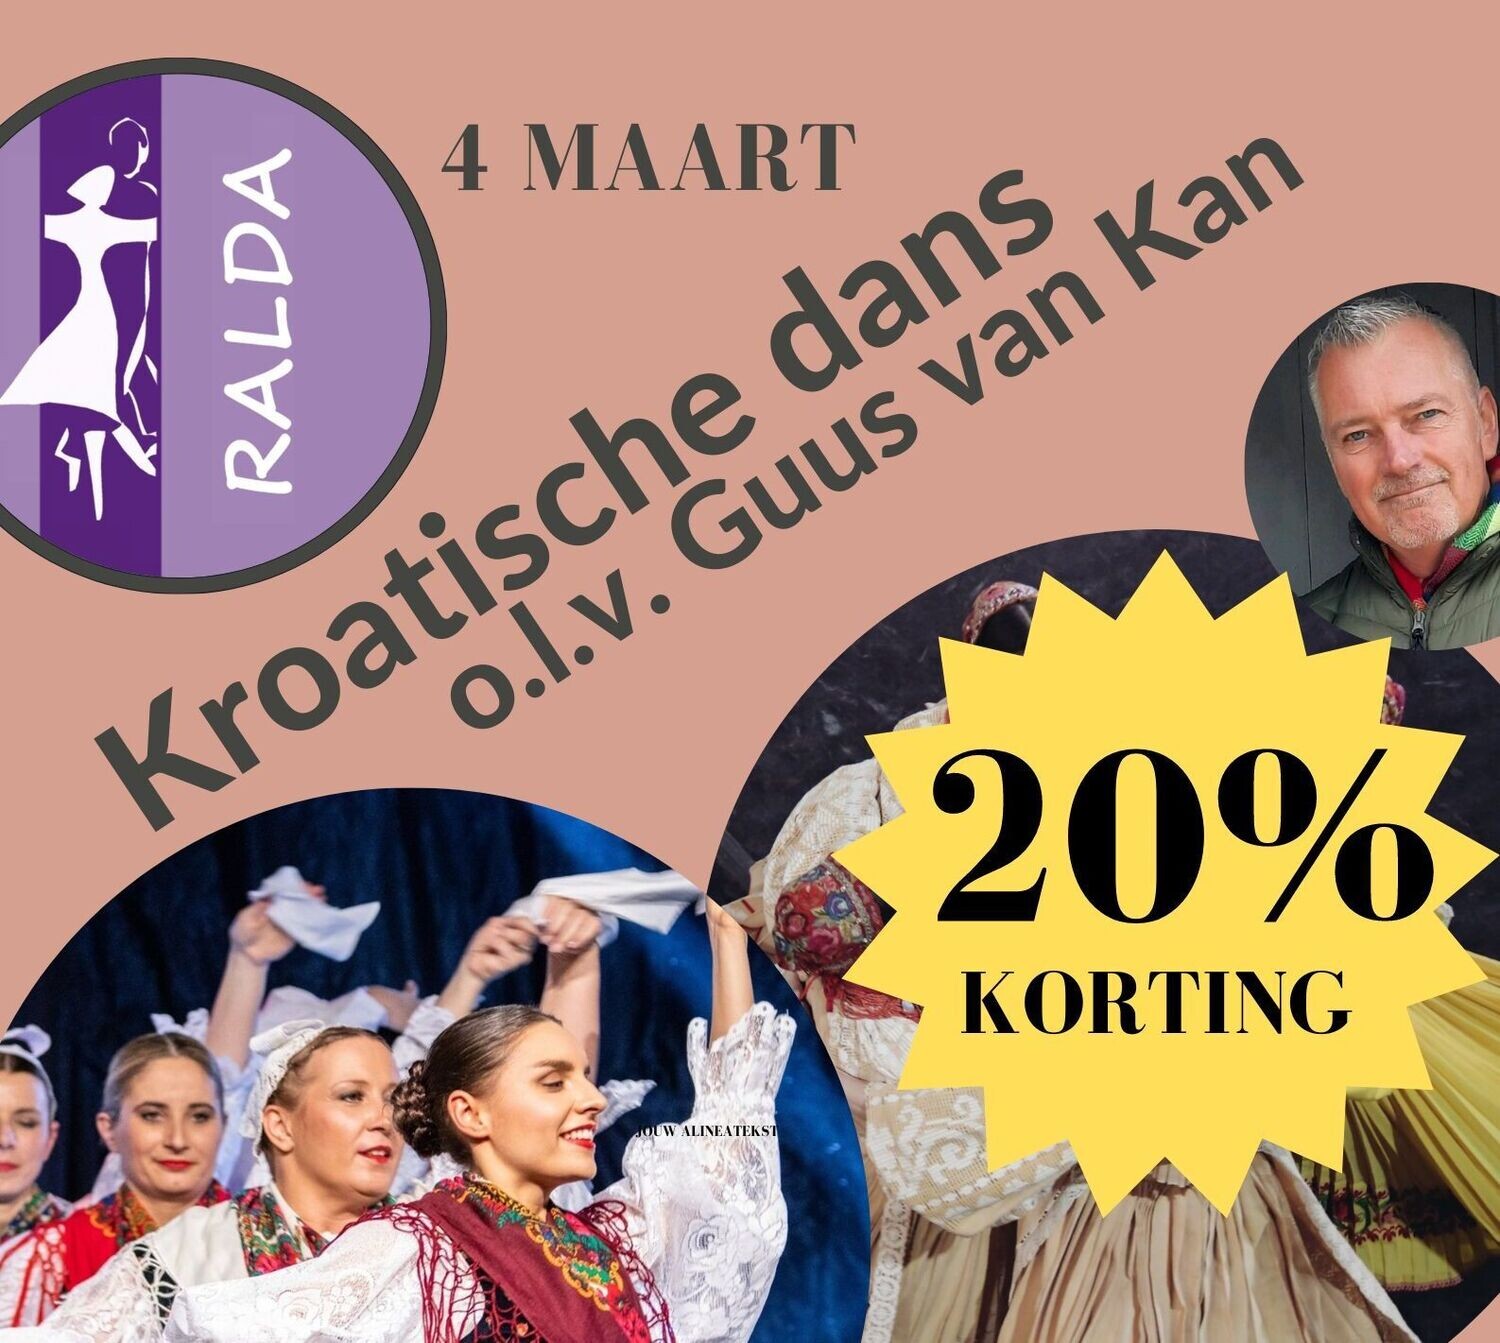 4 maart - Workshop Kroatische dans met Guus van Kan (ledenkorting)